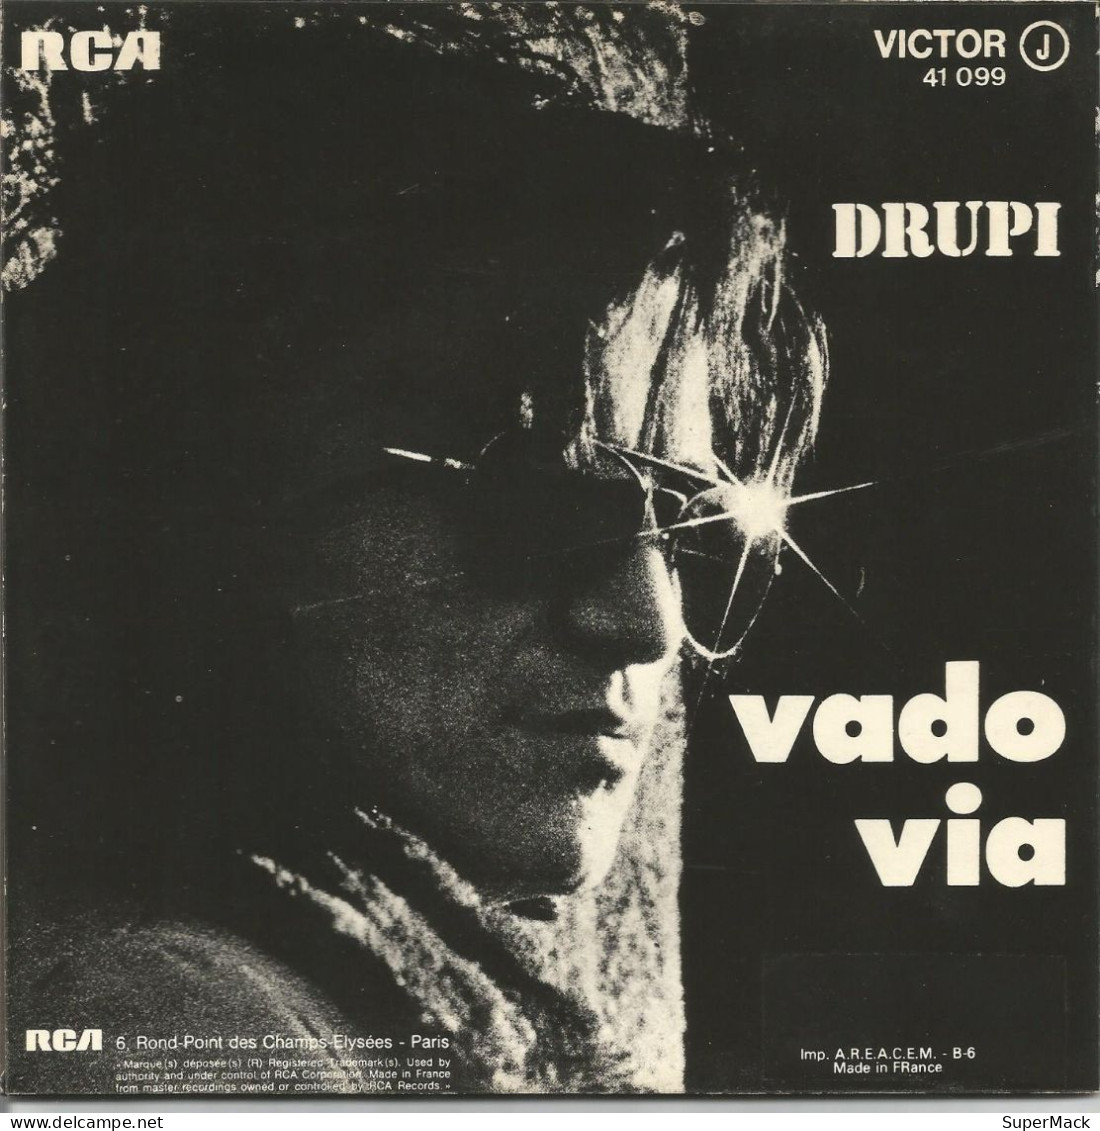 45T Drupi - Vado Via - RCA Victor 41.099 - France - 1973 - Ediciones De Colección